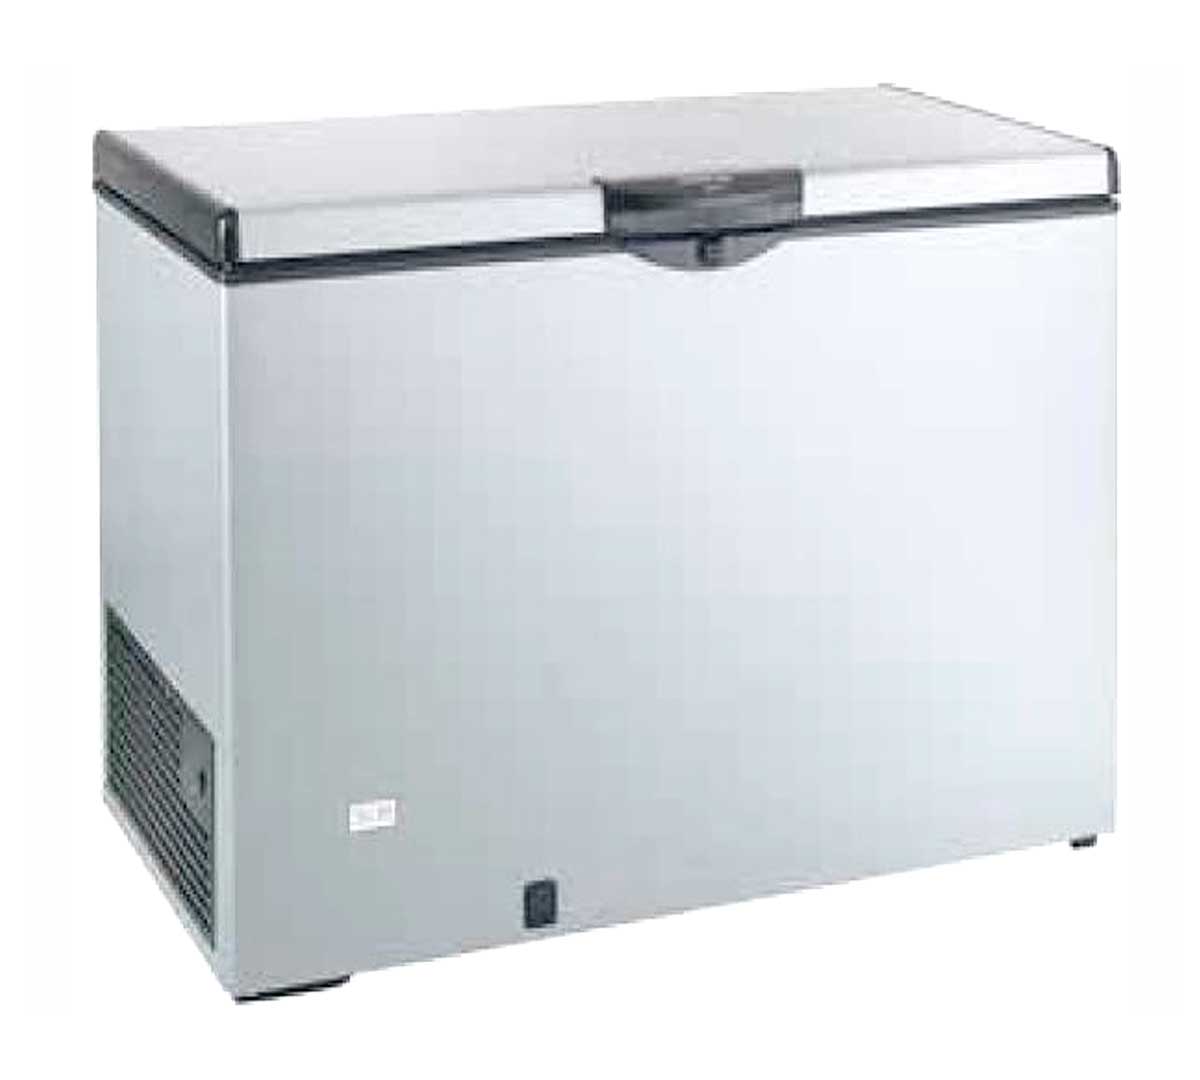 Arcones congeladores a buen precio y con calidad profesional